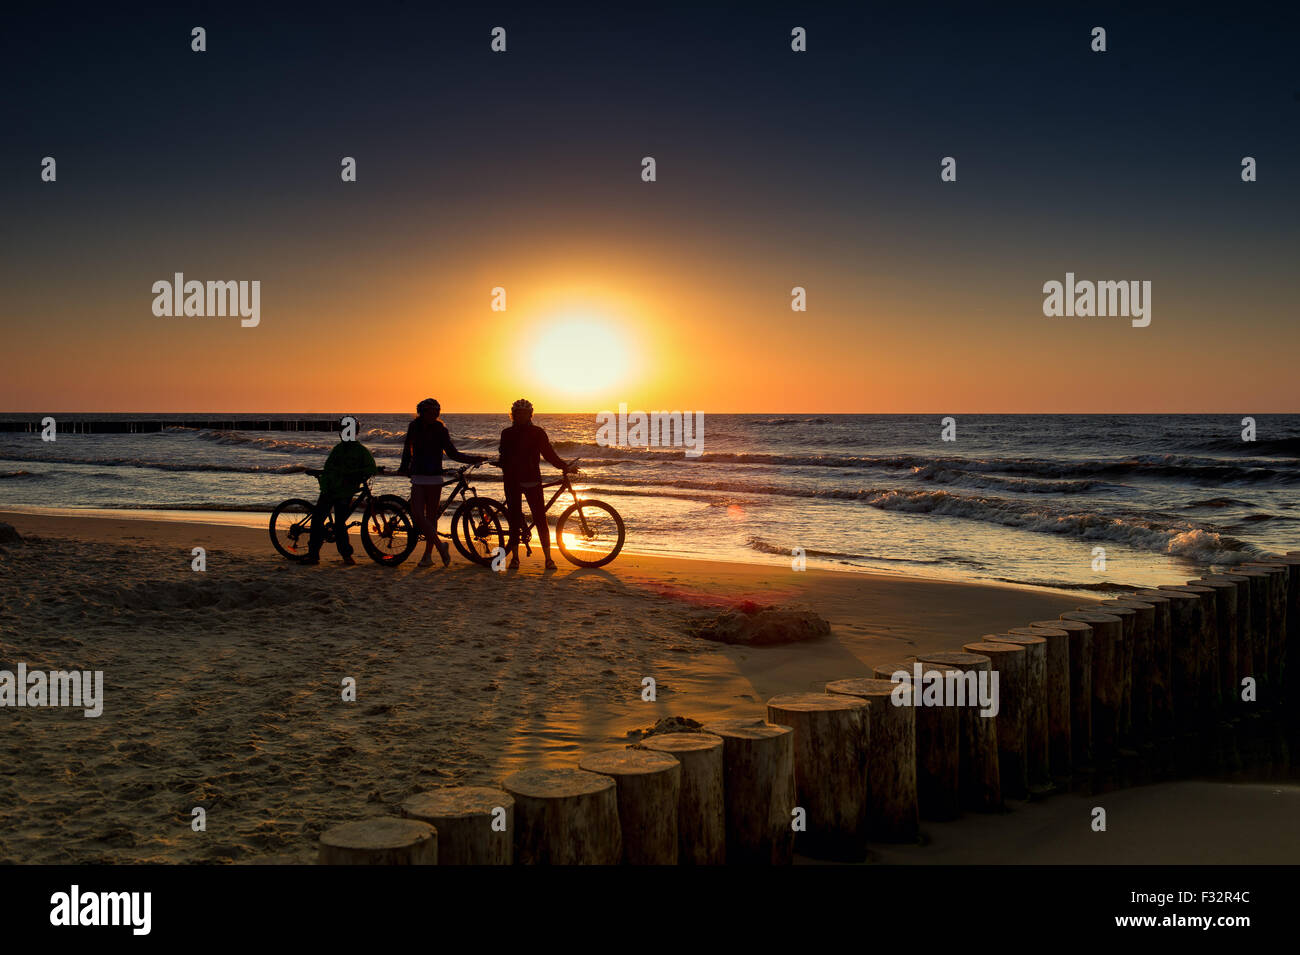 Famille avec des vélos sur la mer Baltique au coucher du soleil Banque D'Images